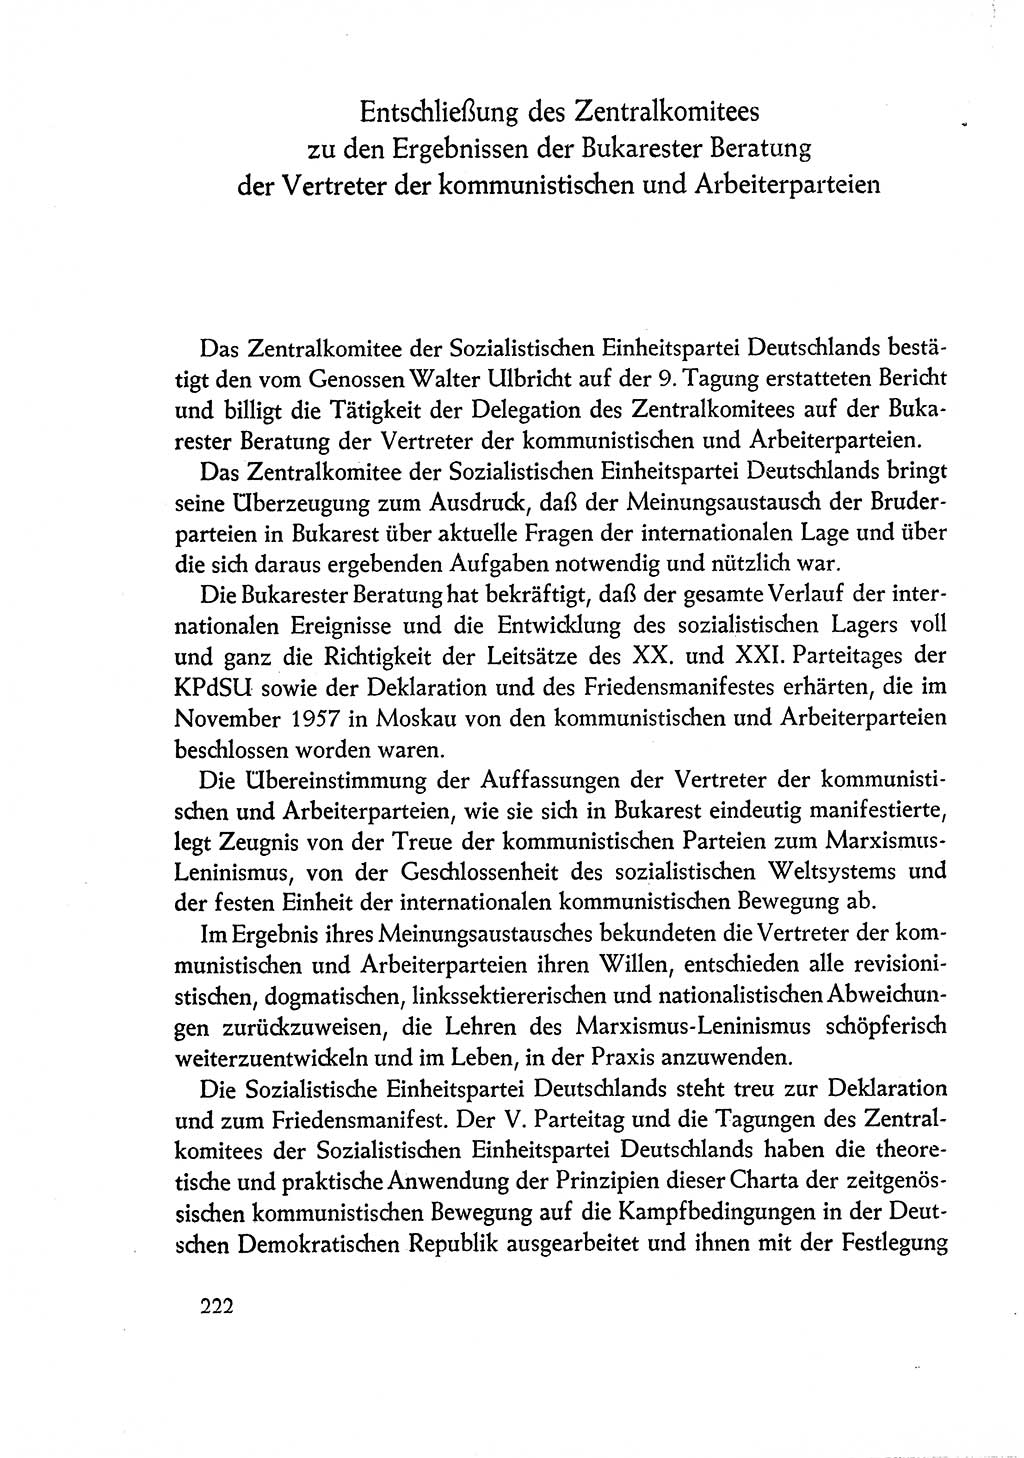 Dokumente der Sozialistischen Einheitspartei Deutschlands (SED) [Deutsche Demokratische Republik (DDR)] 1960-1961, Seite 222 (Dok. SED DDR 1960-1961, S. 222)